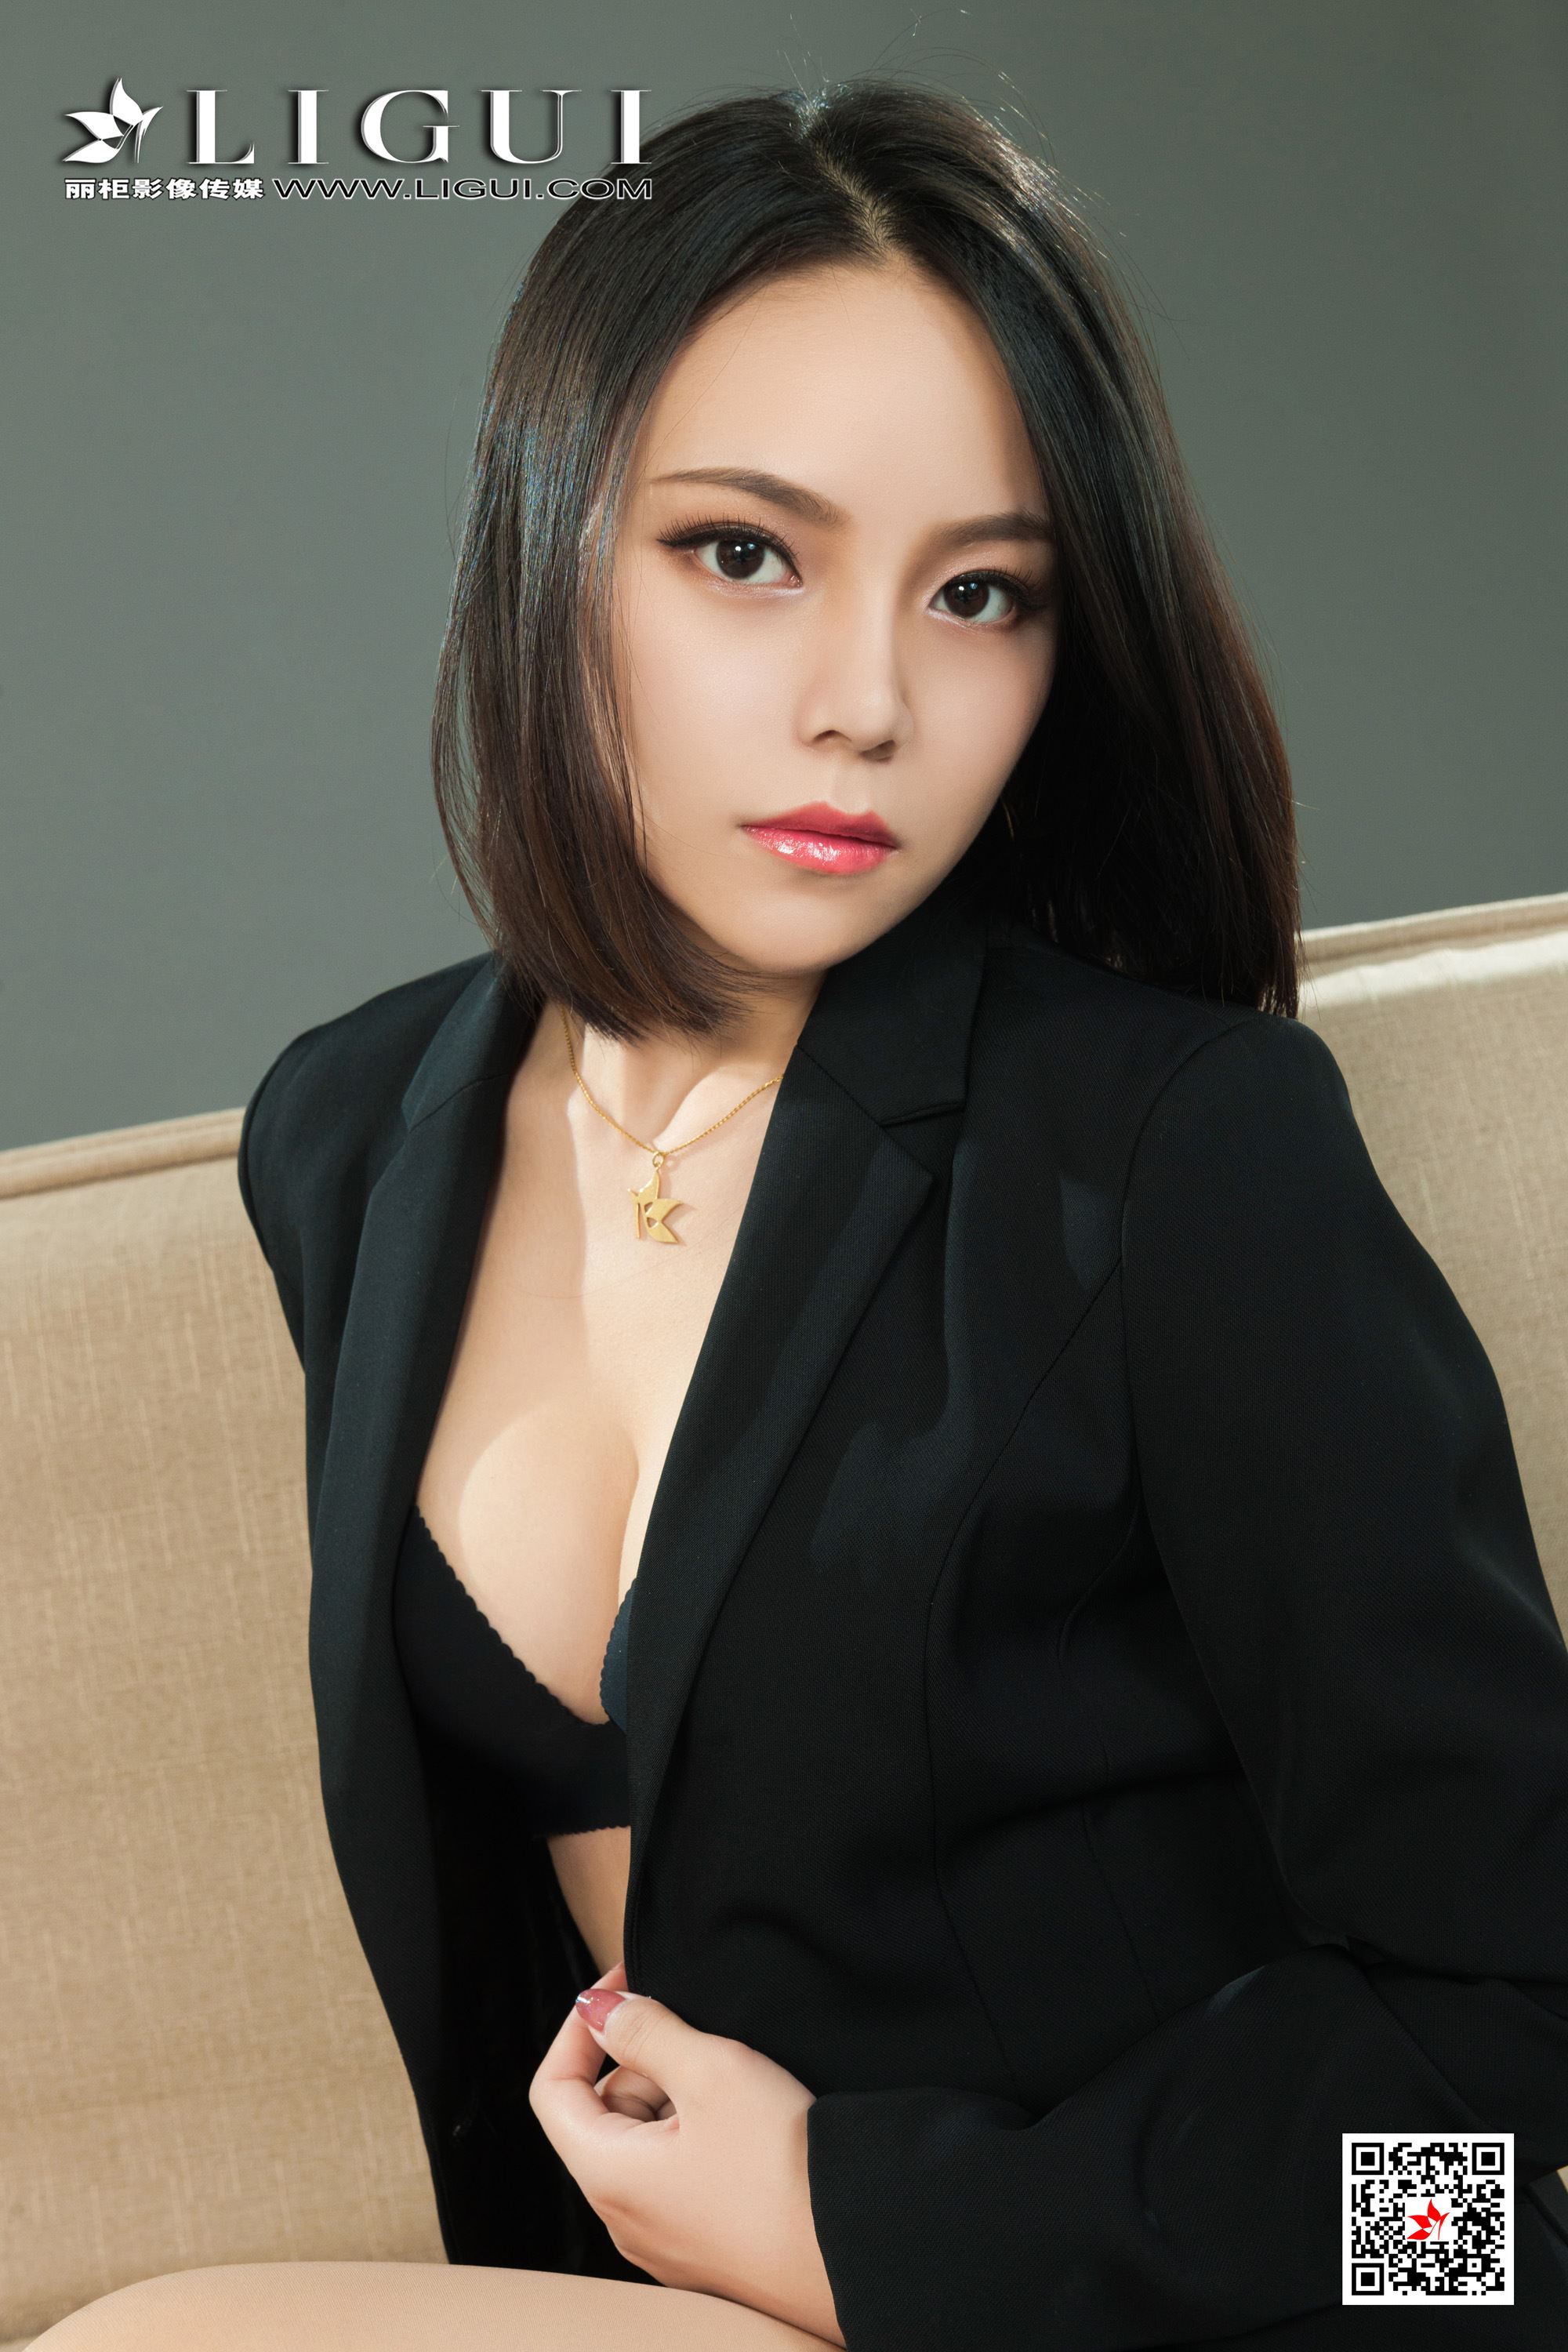 LIGUI cabinet 2021.05.10 network beauty Model Qing Wan